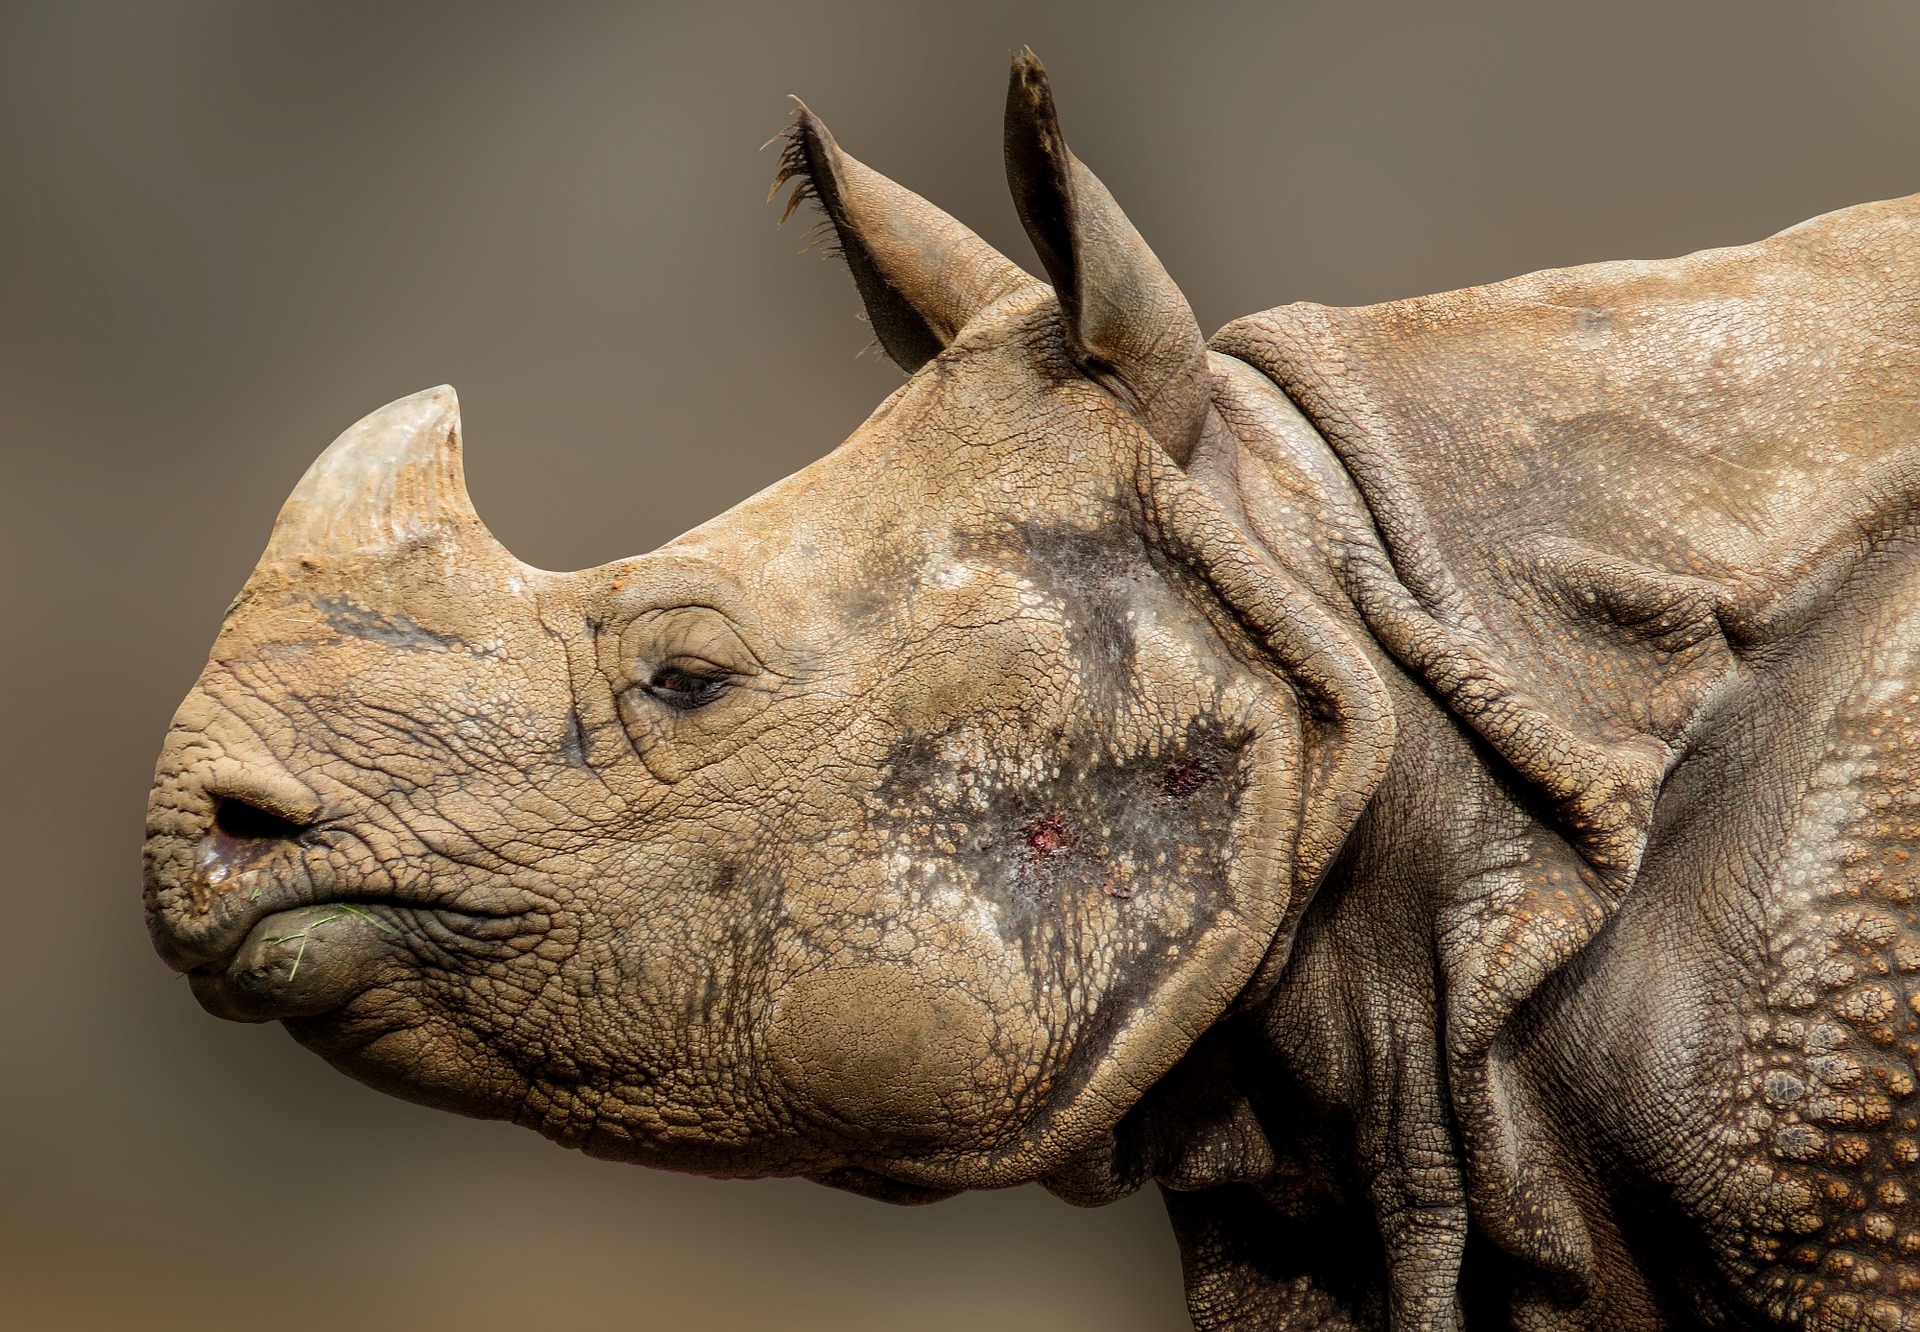 Rhino in the zoo photo